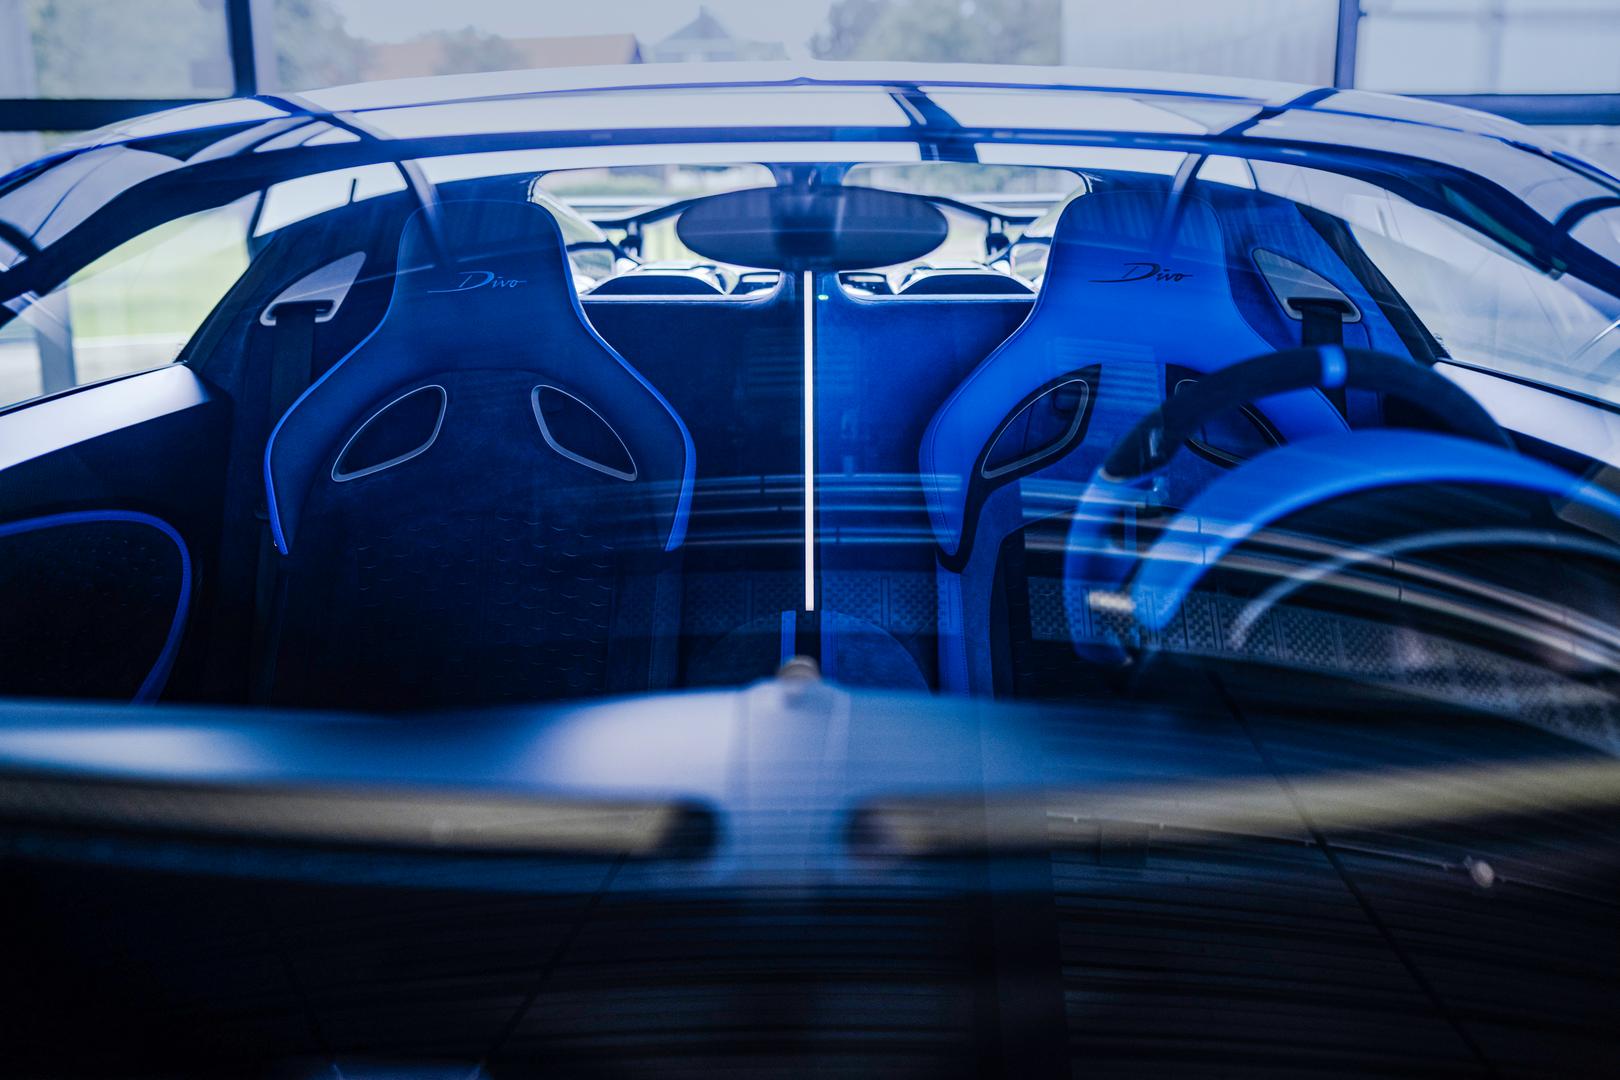 Bugatti Divo seats